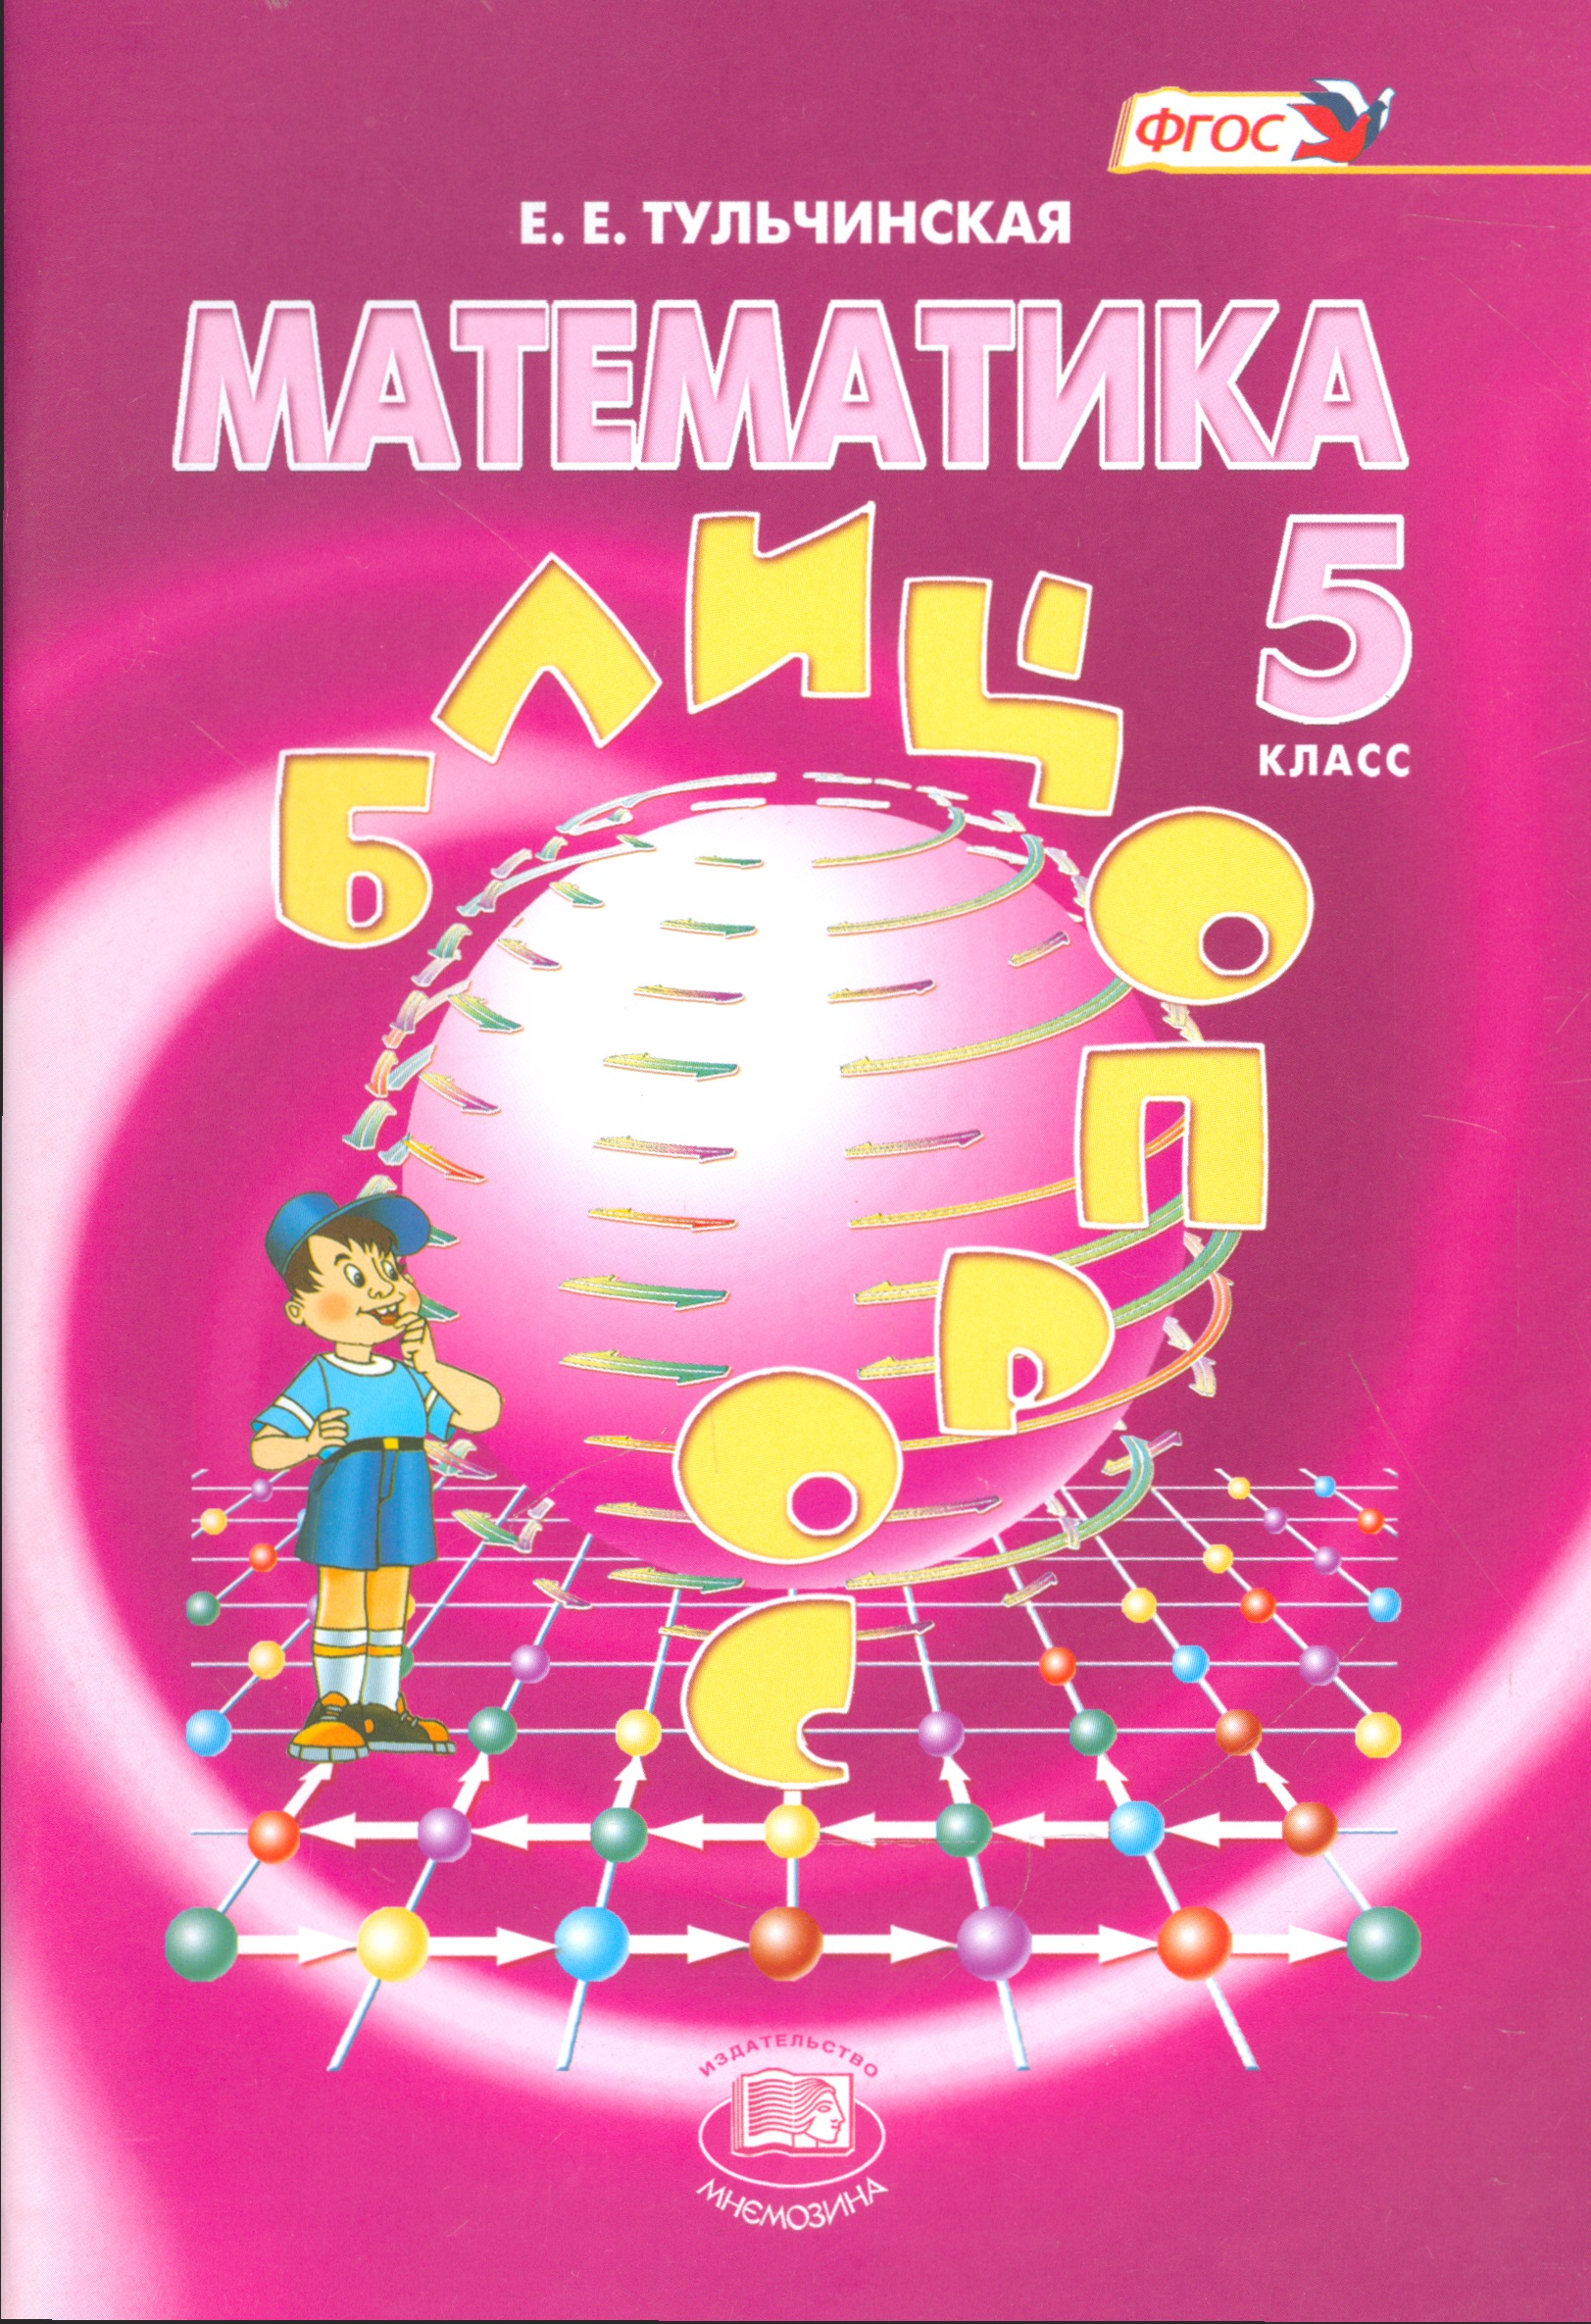 Математика 5 класс. Обложки книг по математике. Книга по математике 5 класс. Математика обложка книги.